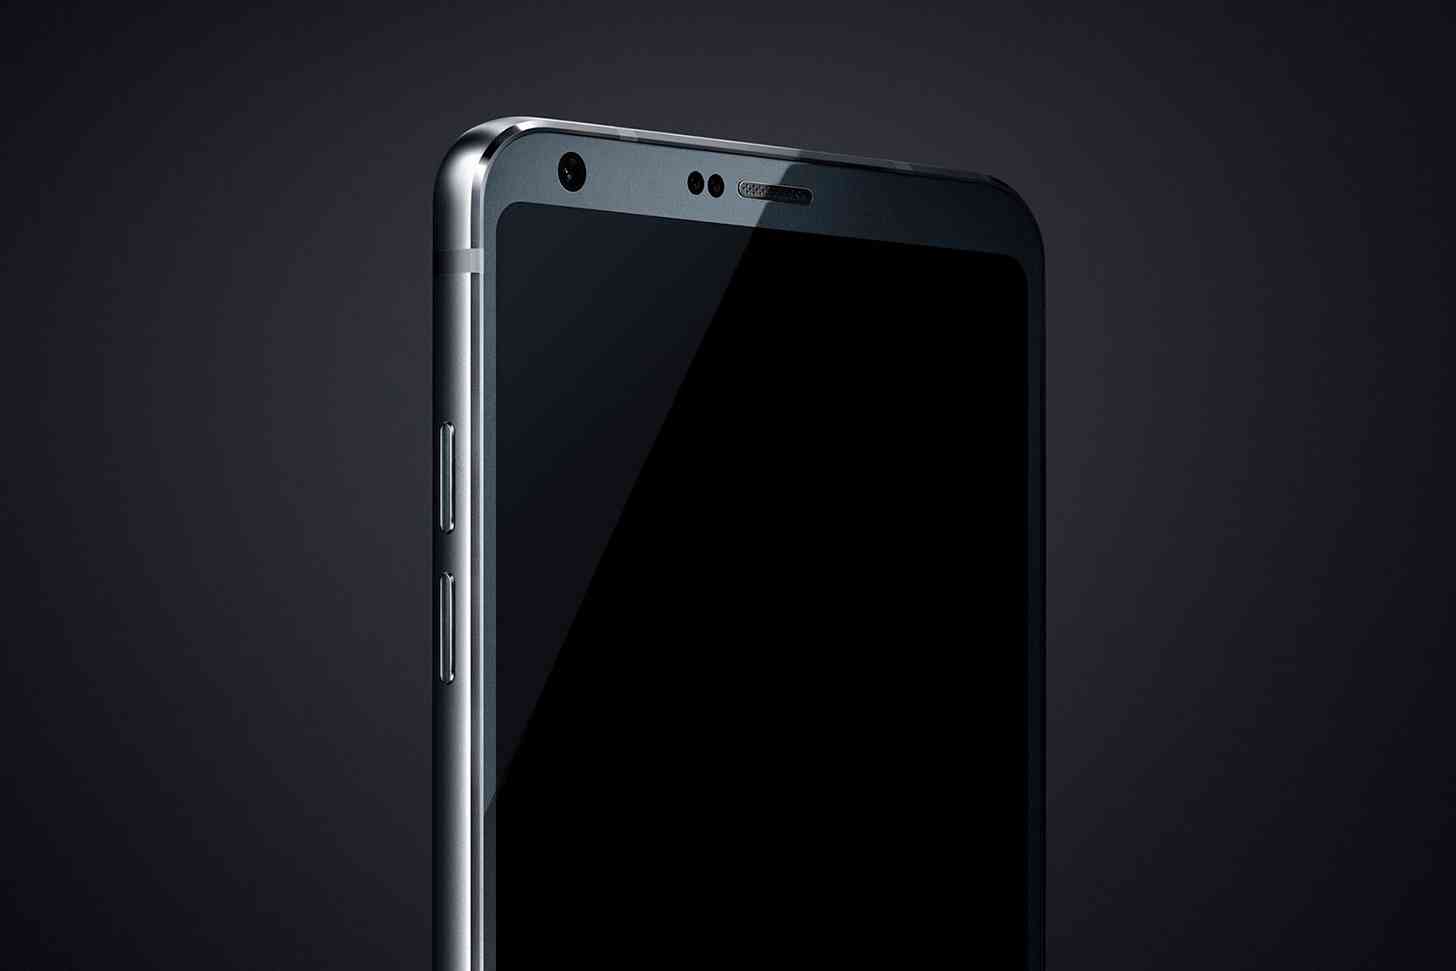 LG G6 image leak